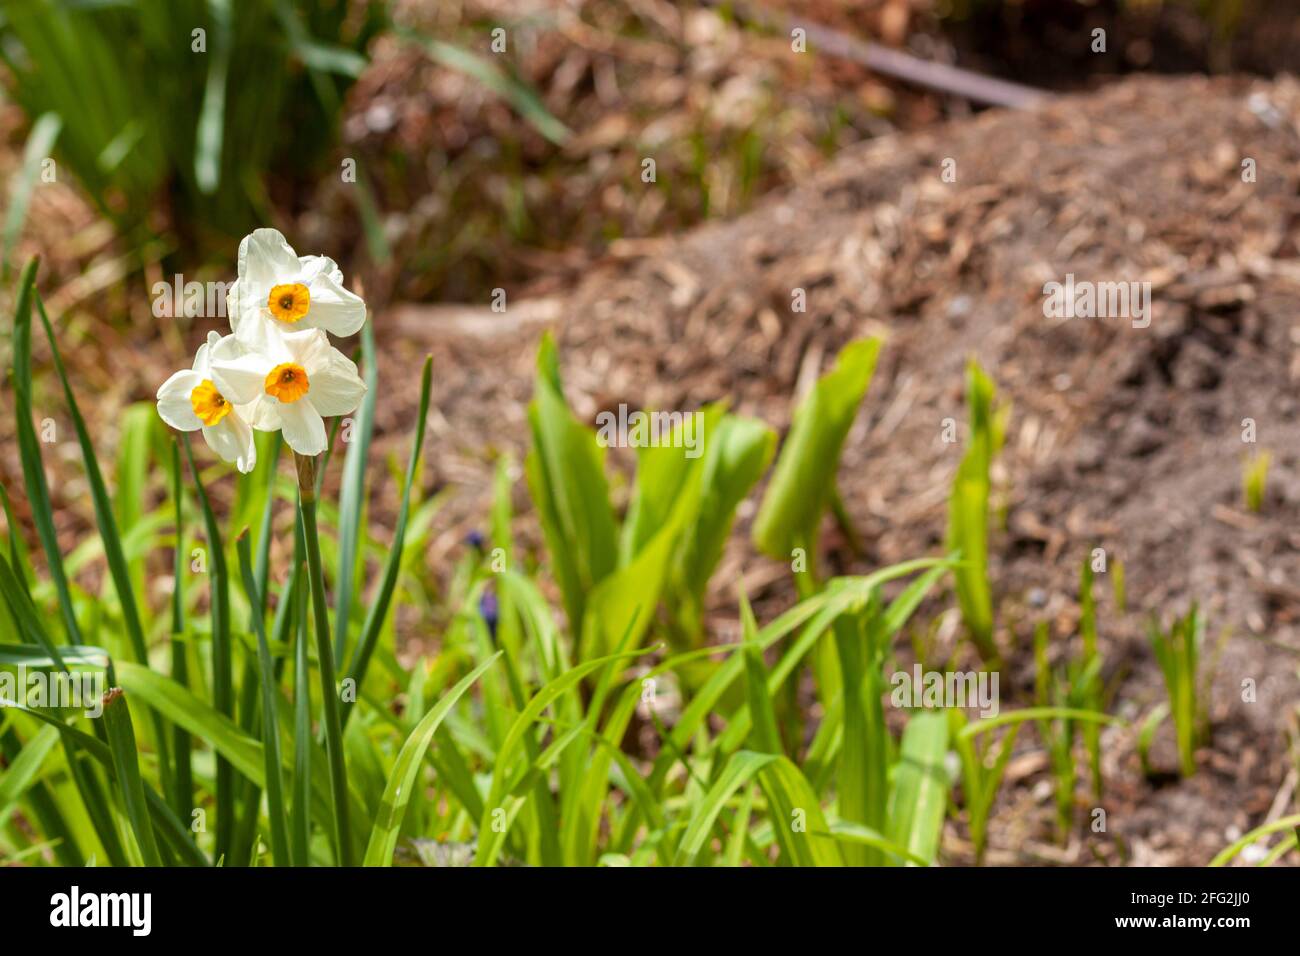 Primo piano immagine isolata di un grappolo di narcisi bianchi in un giardino con mucchi di fertilizzanti e compost colti dietro di loro. Giardinaggio primaverile, a. Foto Stock